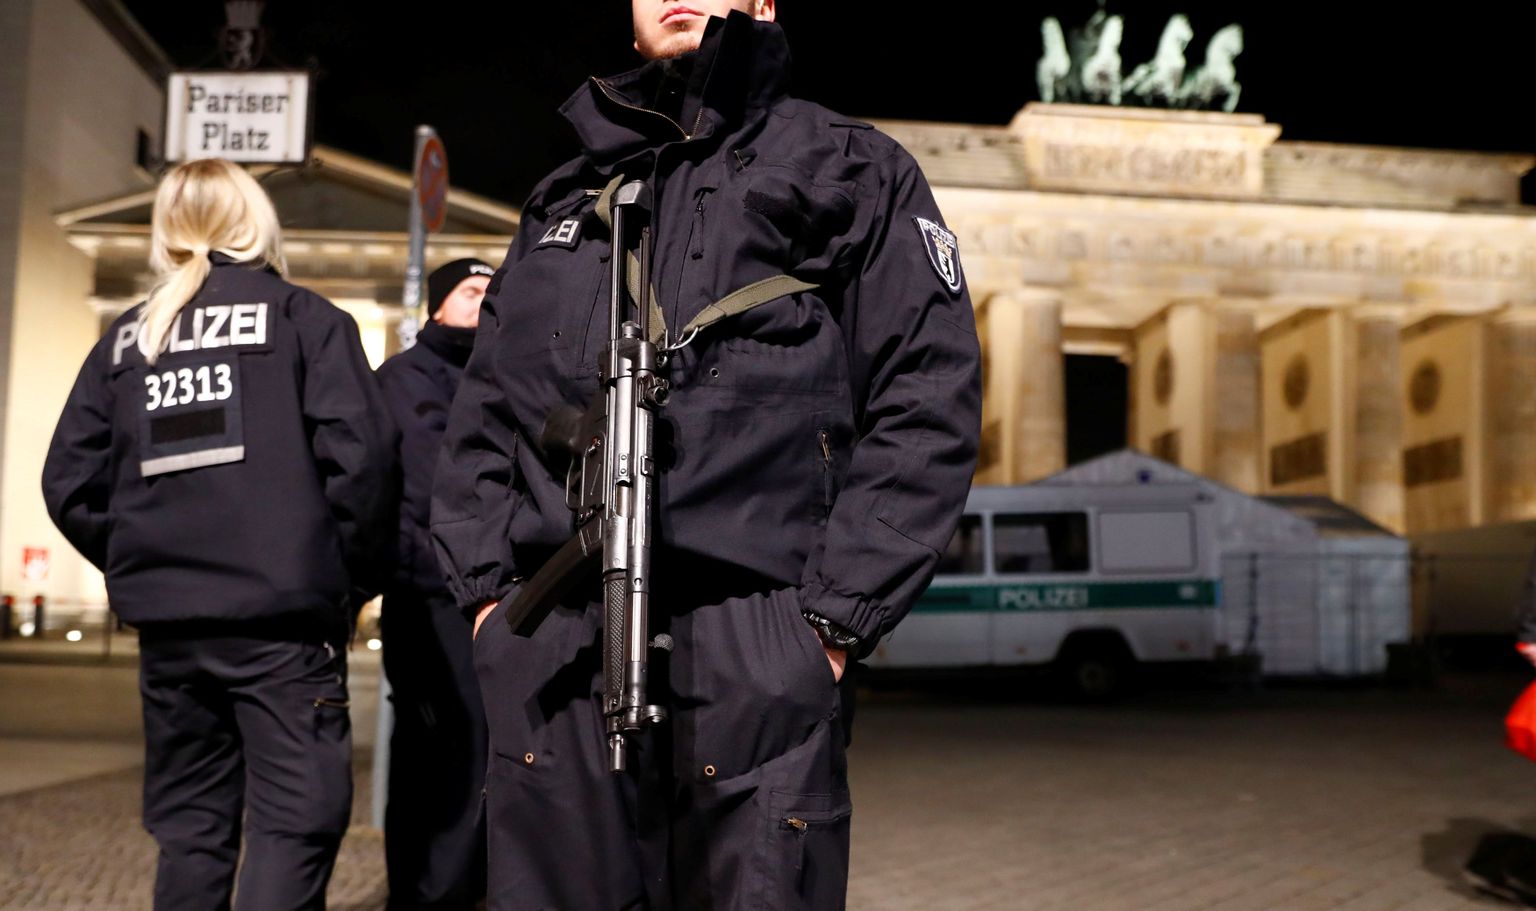 Saksa politsei valvamas Brandenburgi väravate juures.